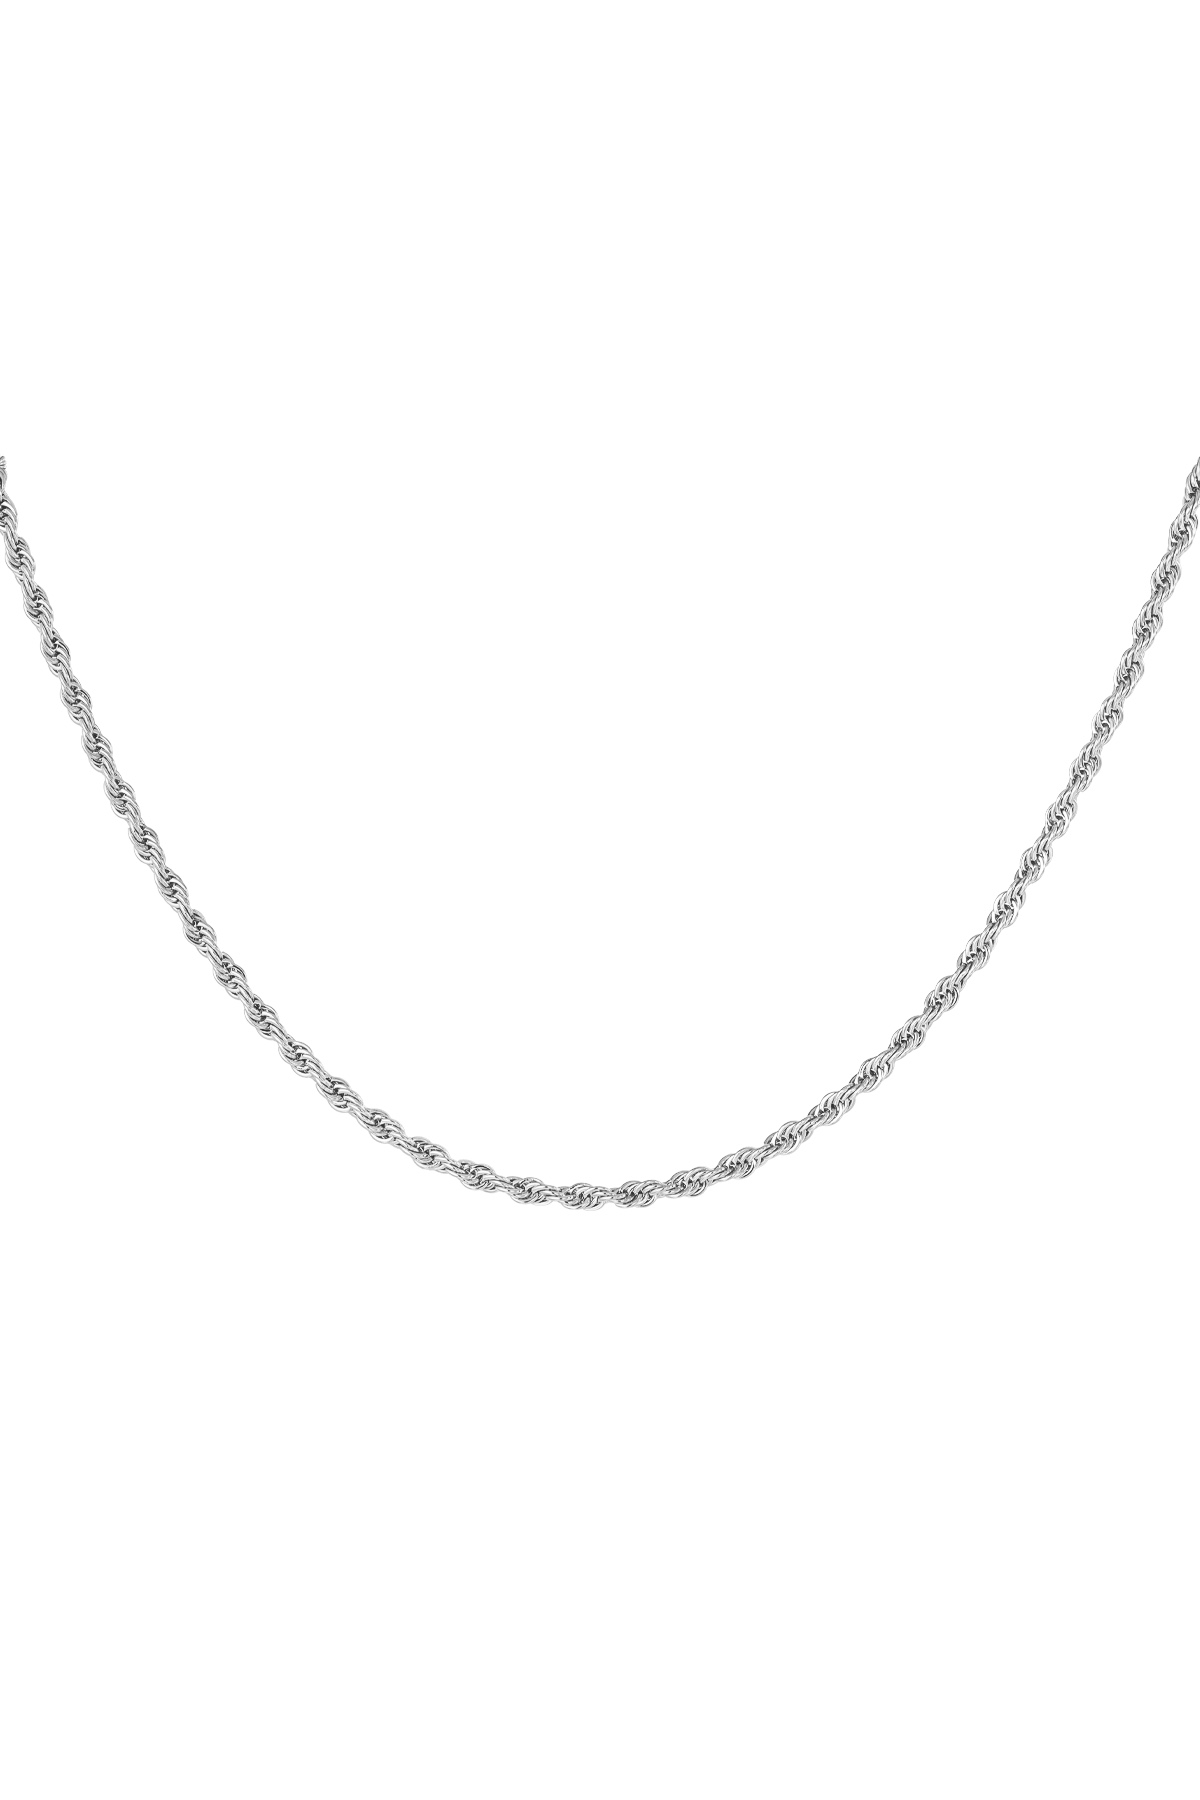 Collana corta intrecciata - argento-3.0MM h5 